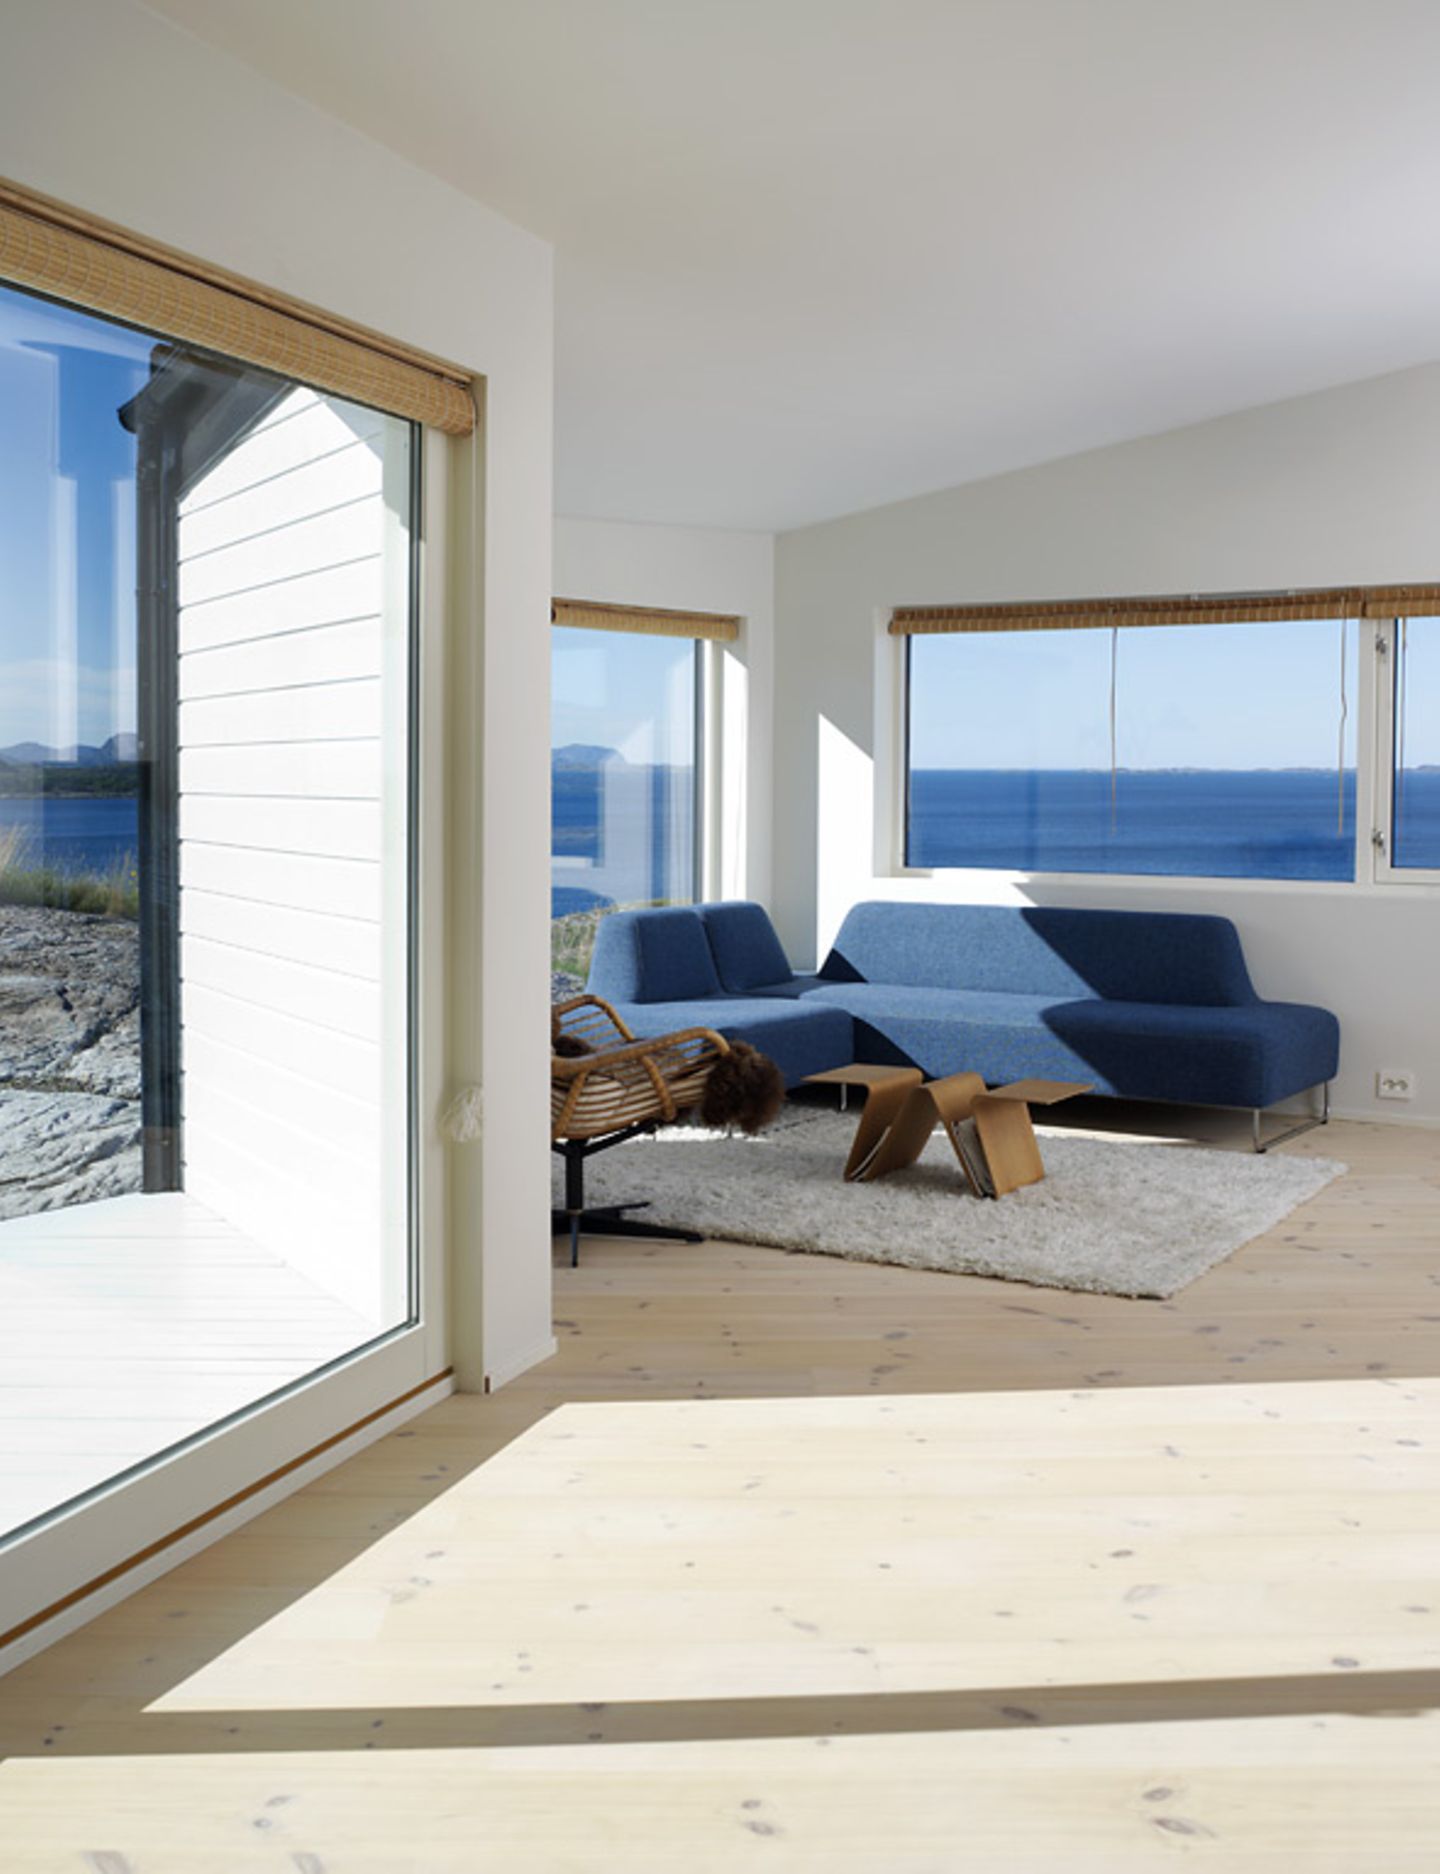 Wohnzimmer mit Meerblick in Norwegen